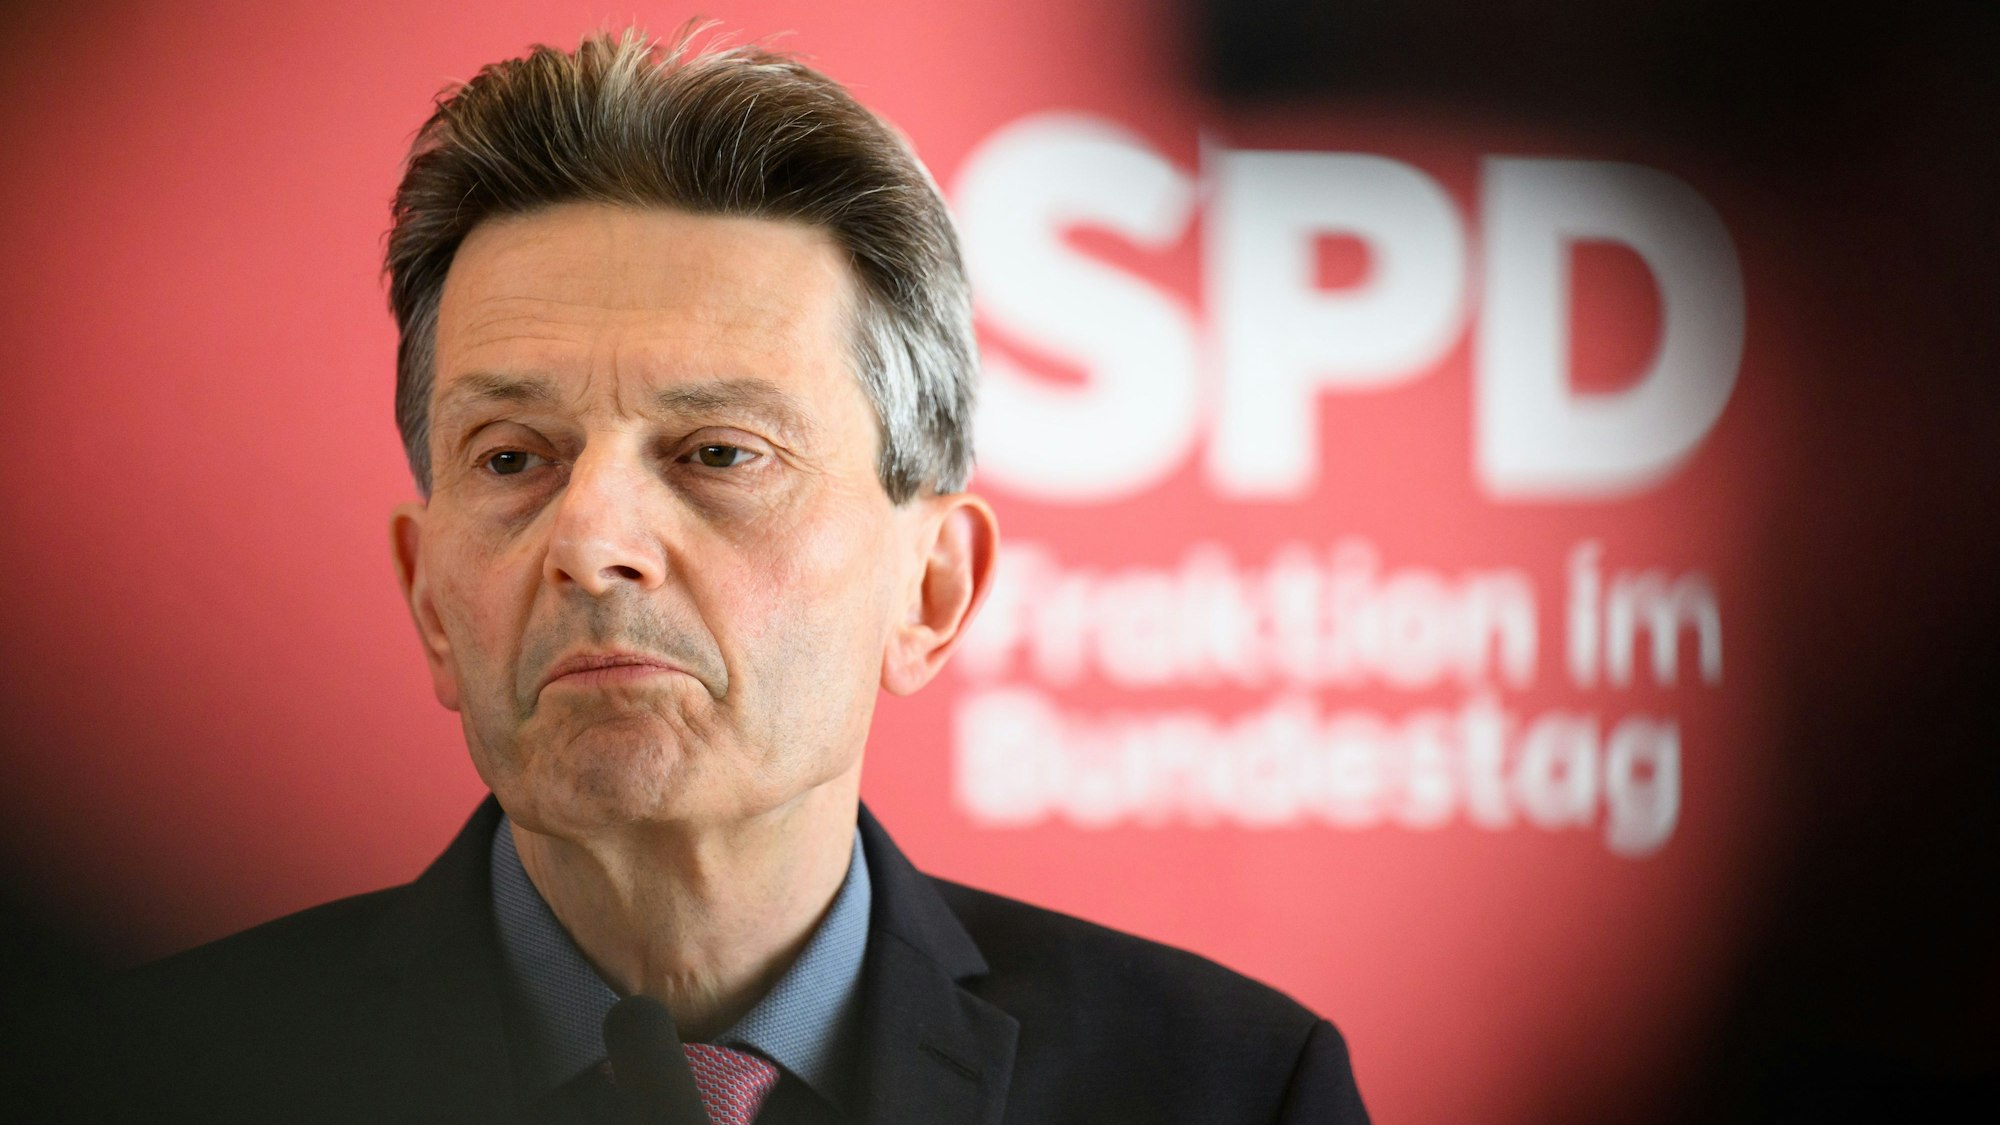 Der Kölner SPD-Politiker Rolf Mützenich. Der Vorsitzende der SPD-Bundestagsfraktion möchte sich die Kritik von Robert Habeck an der FDP nicht zu eigen machen. (Archivbild)